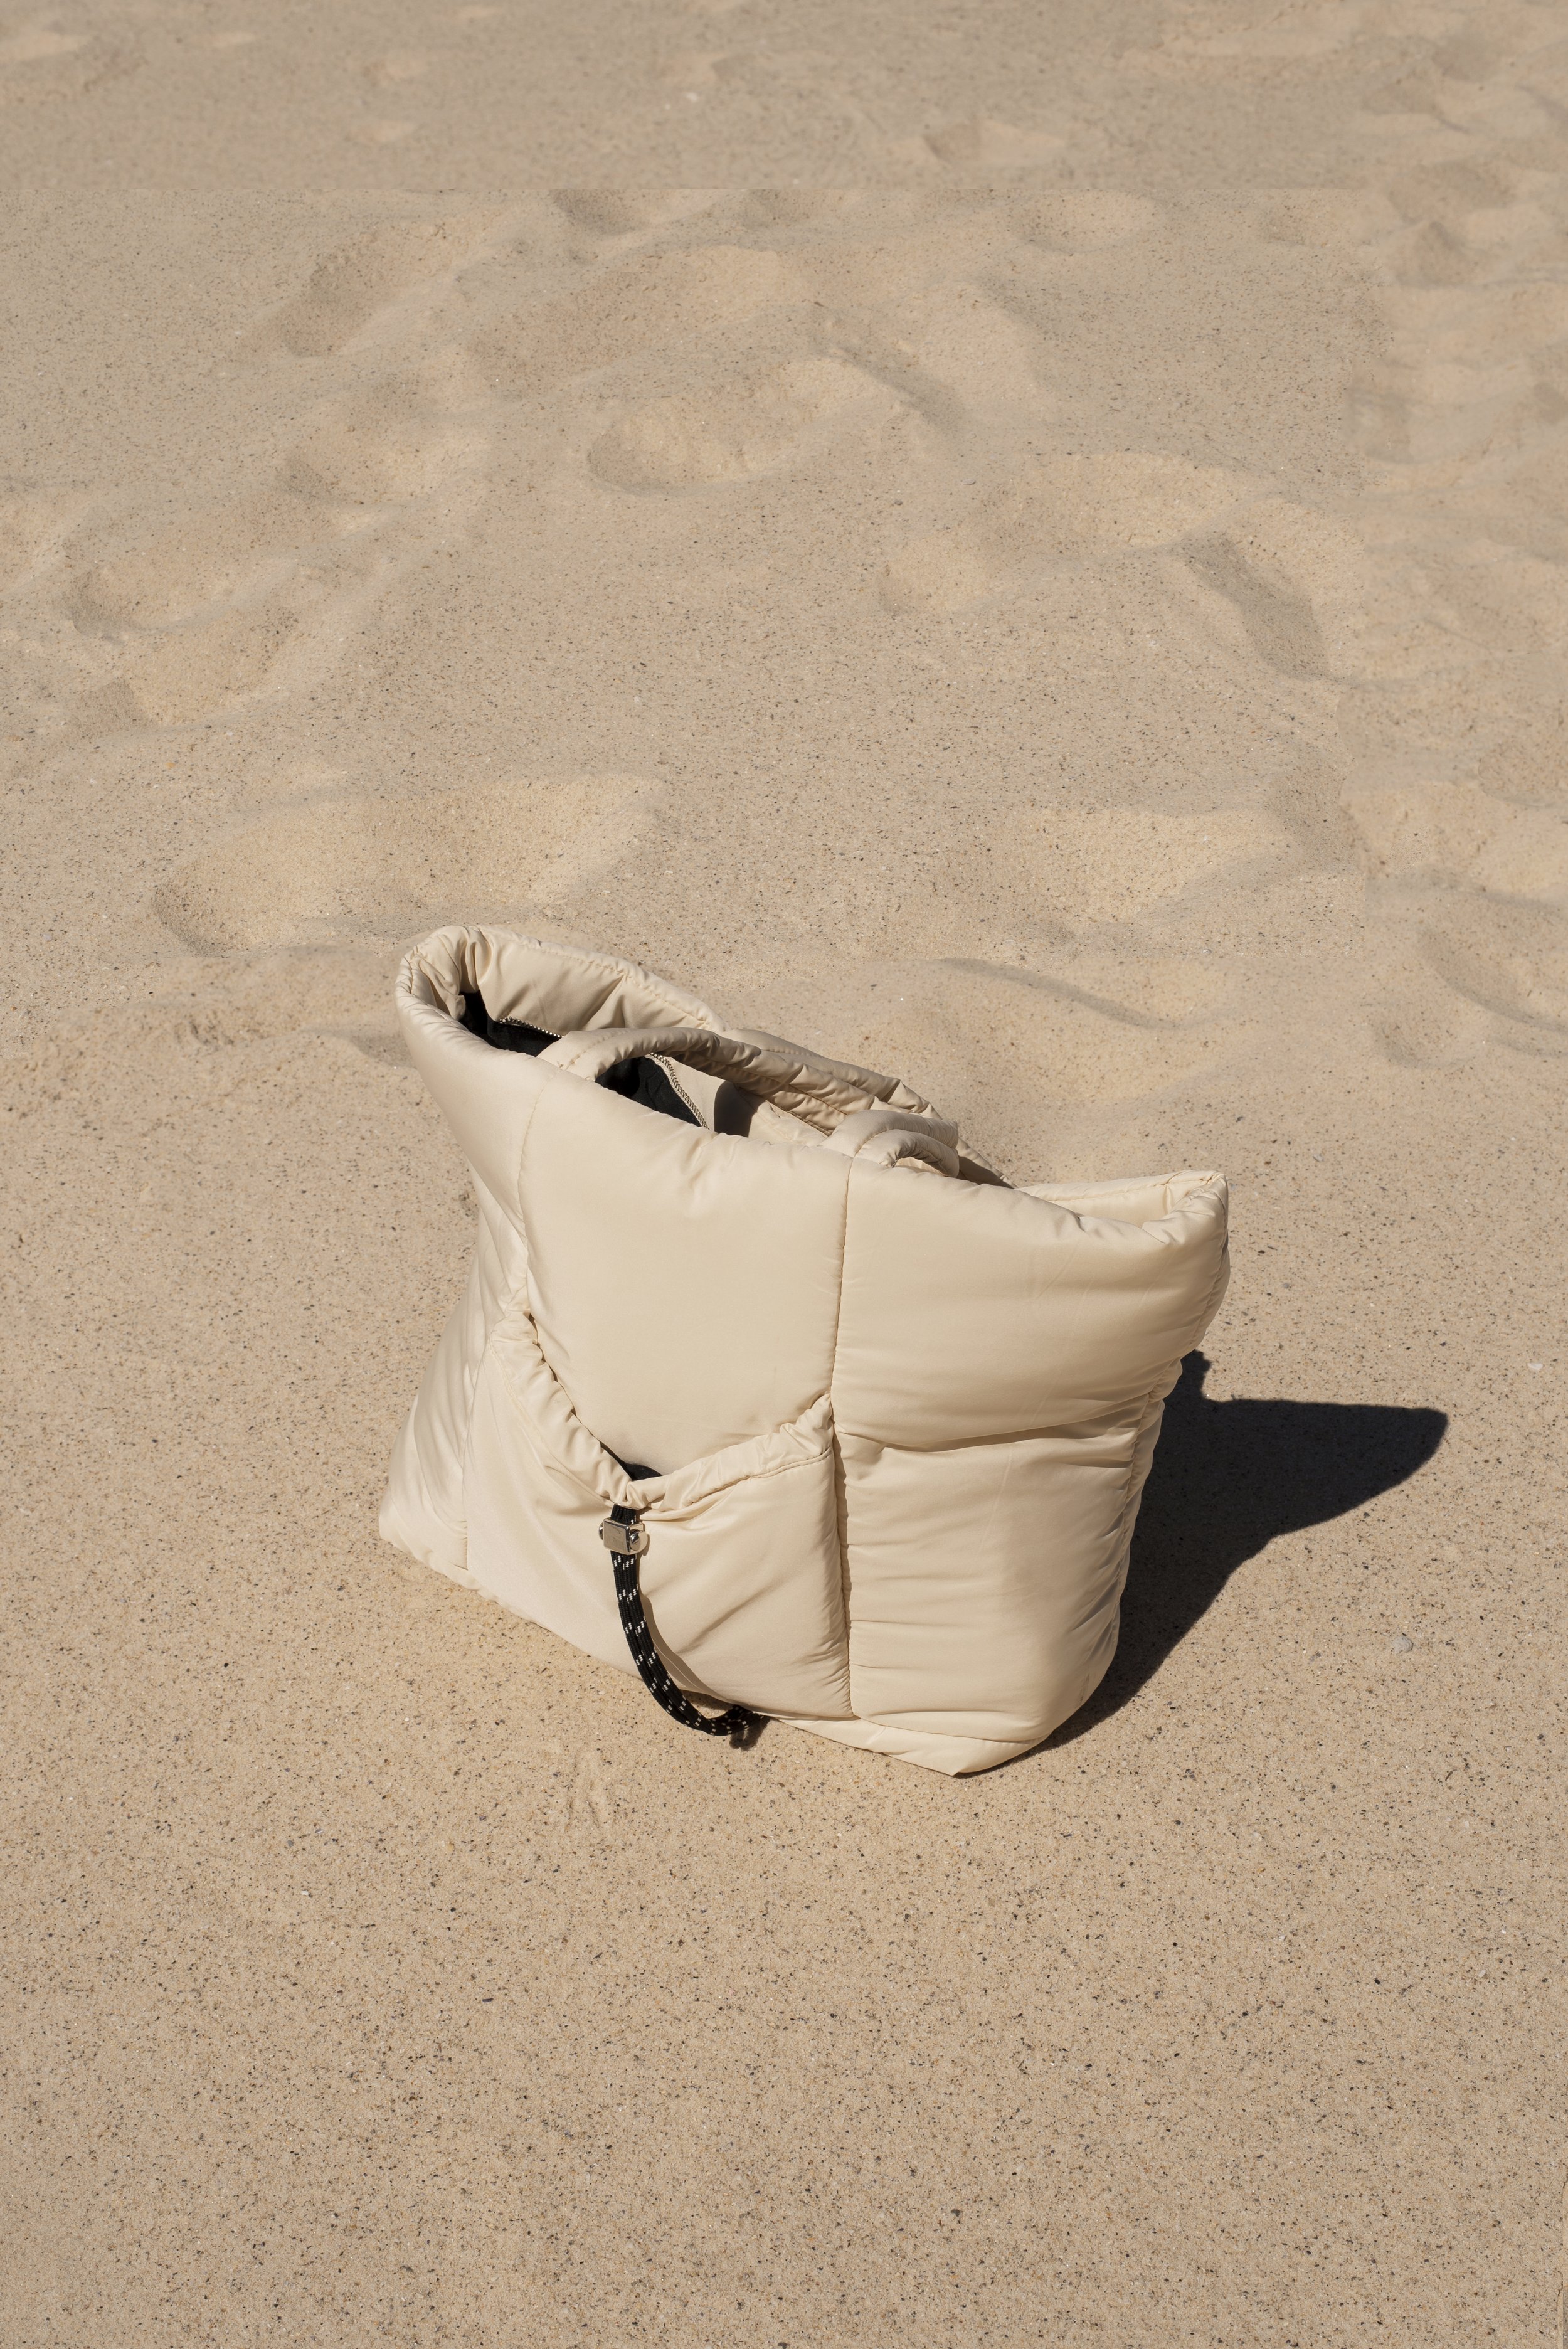 tan puffer bag topshop women's fashion sydney beach style brittany byrne.jpg